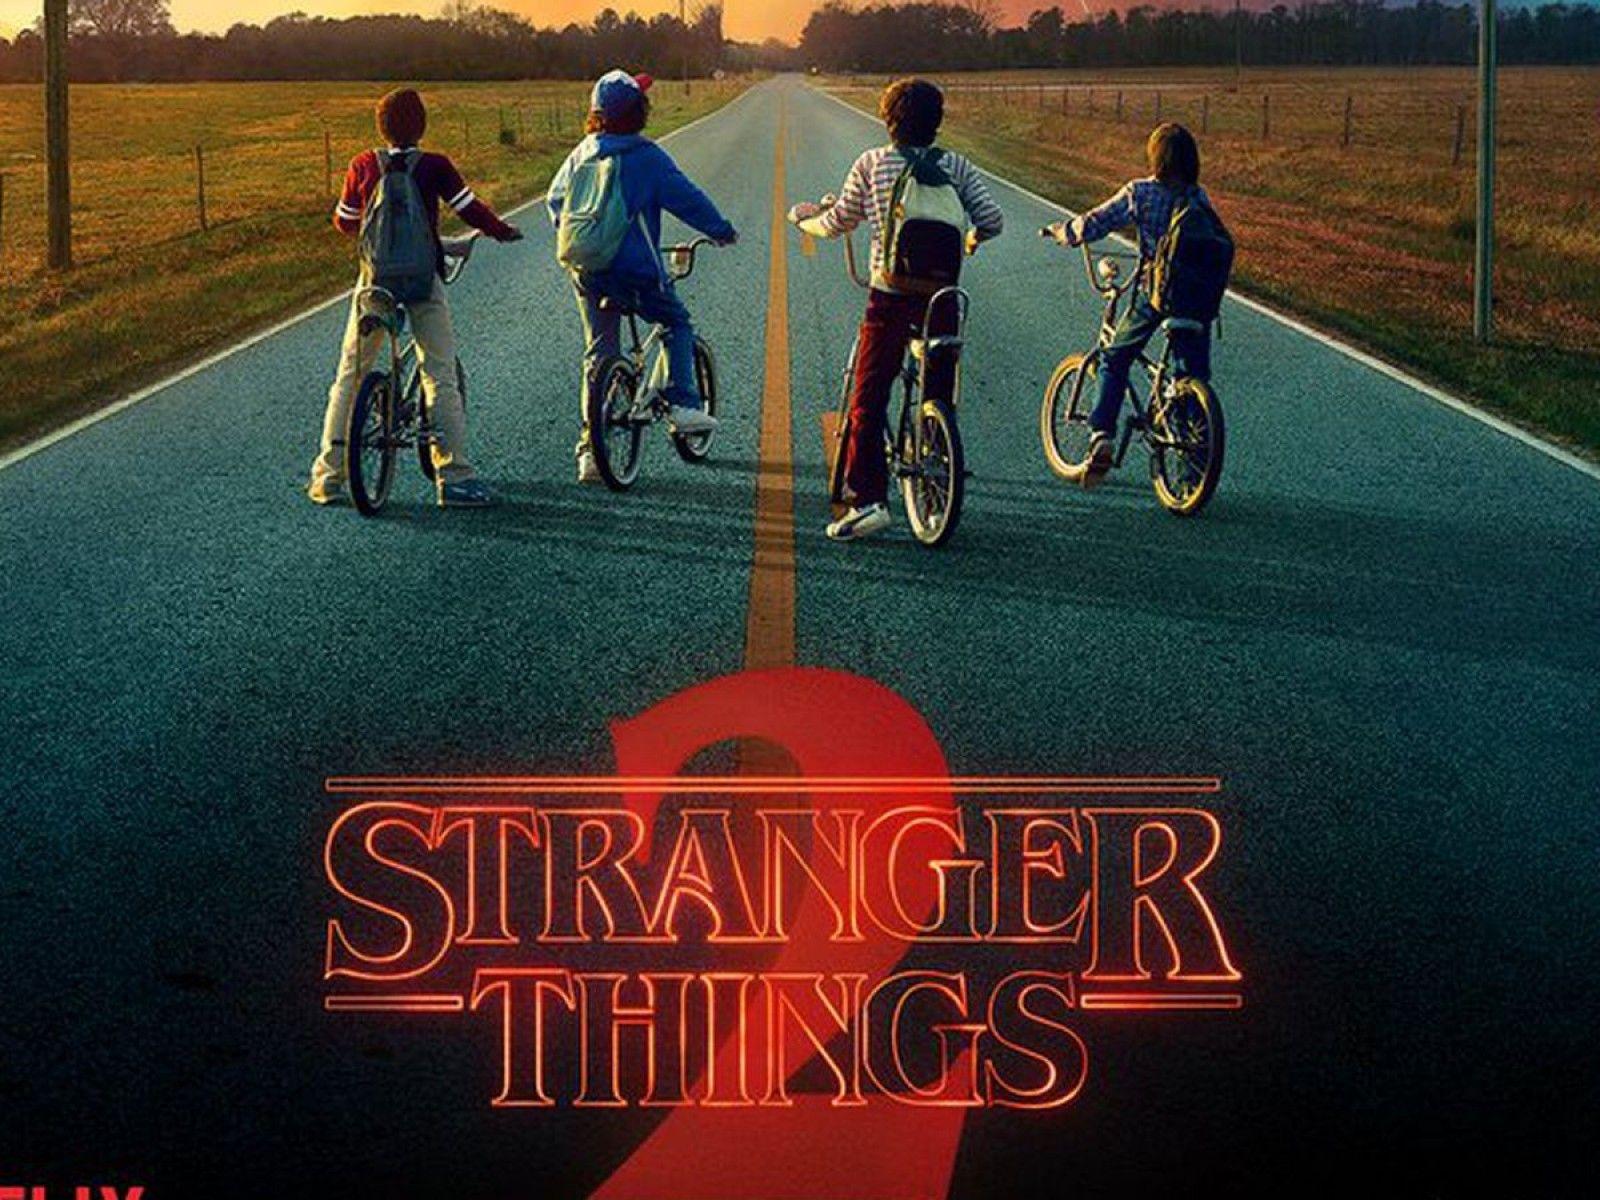 1600 x 1200 · jpeg - Stranger Things Wallpaper Bicycle - Movie Wallpaper